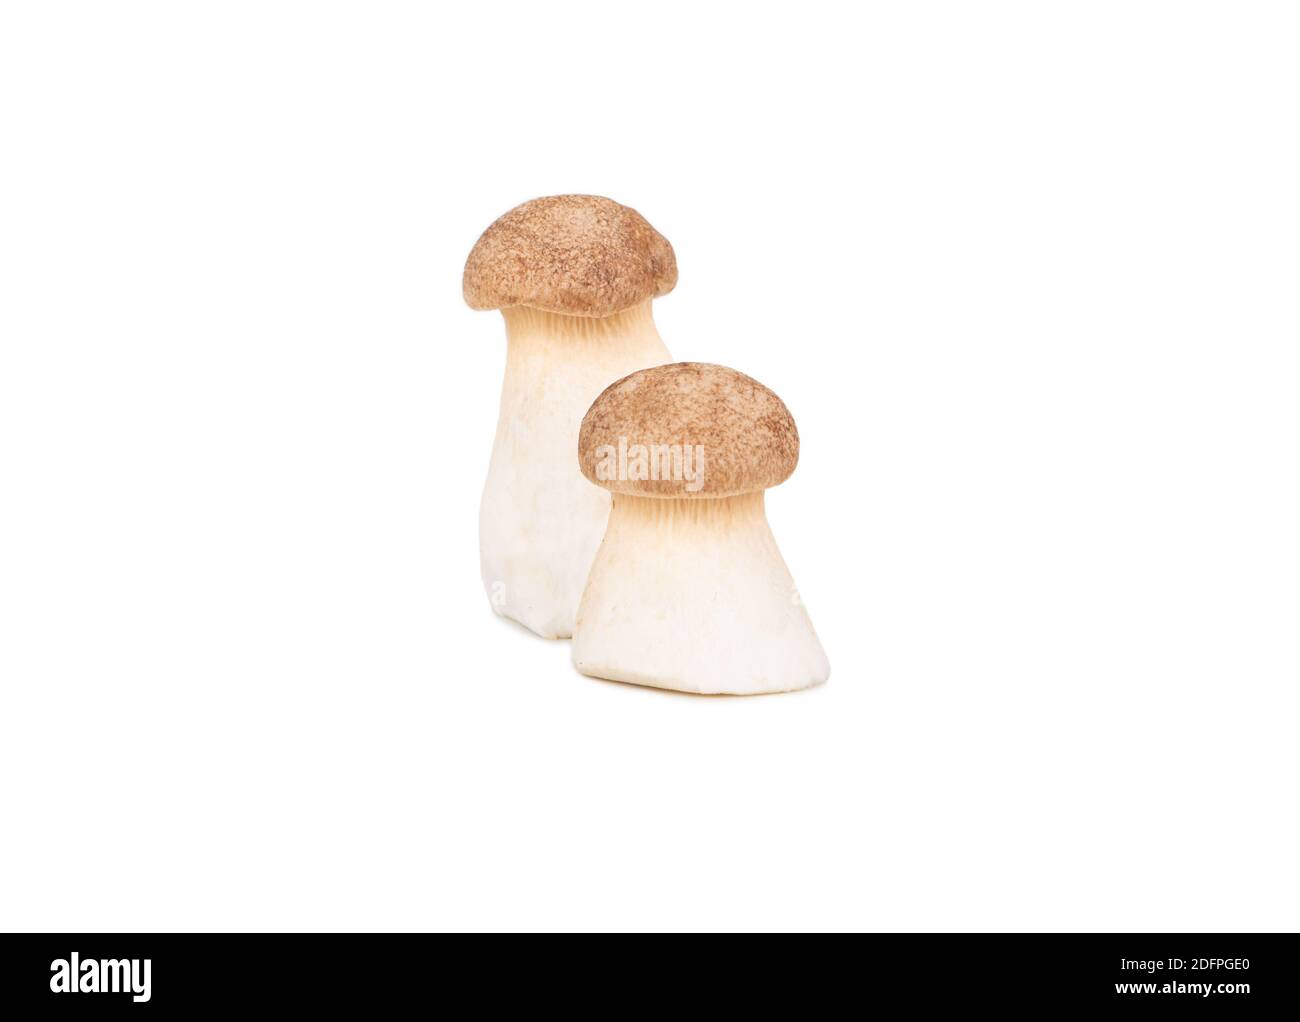 Deux champignons eringi crus isolés sur fond blanc Banque D'Images